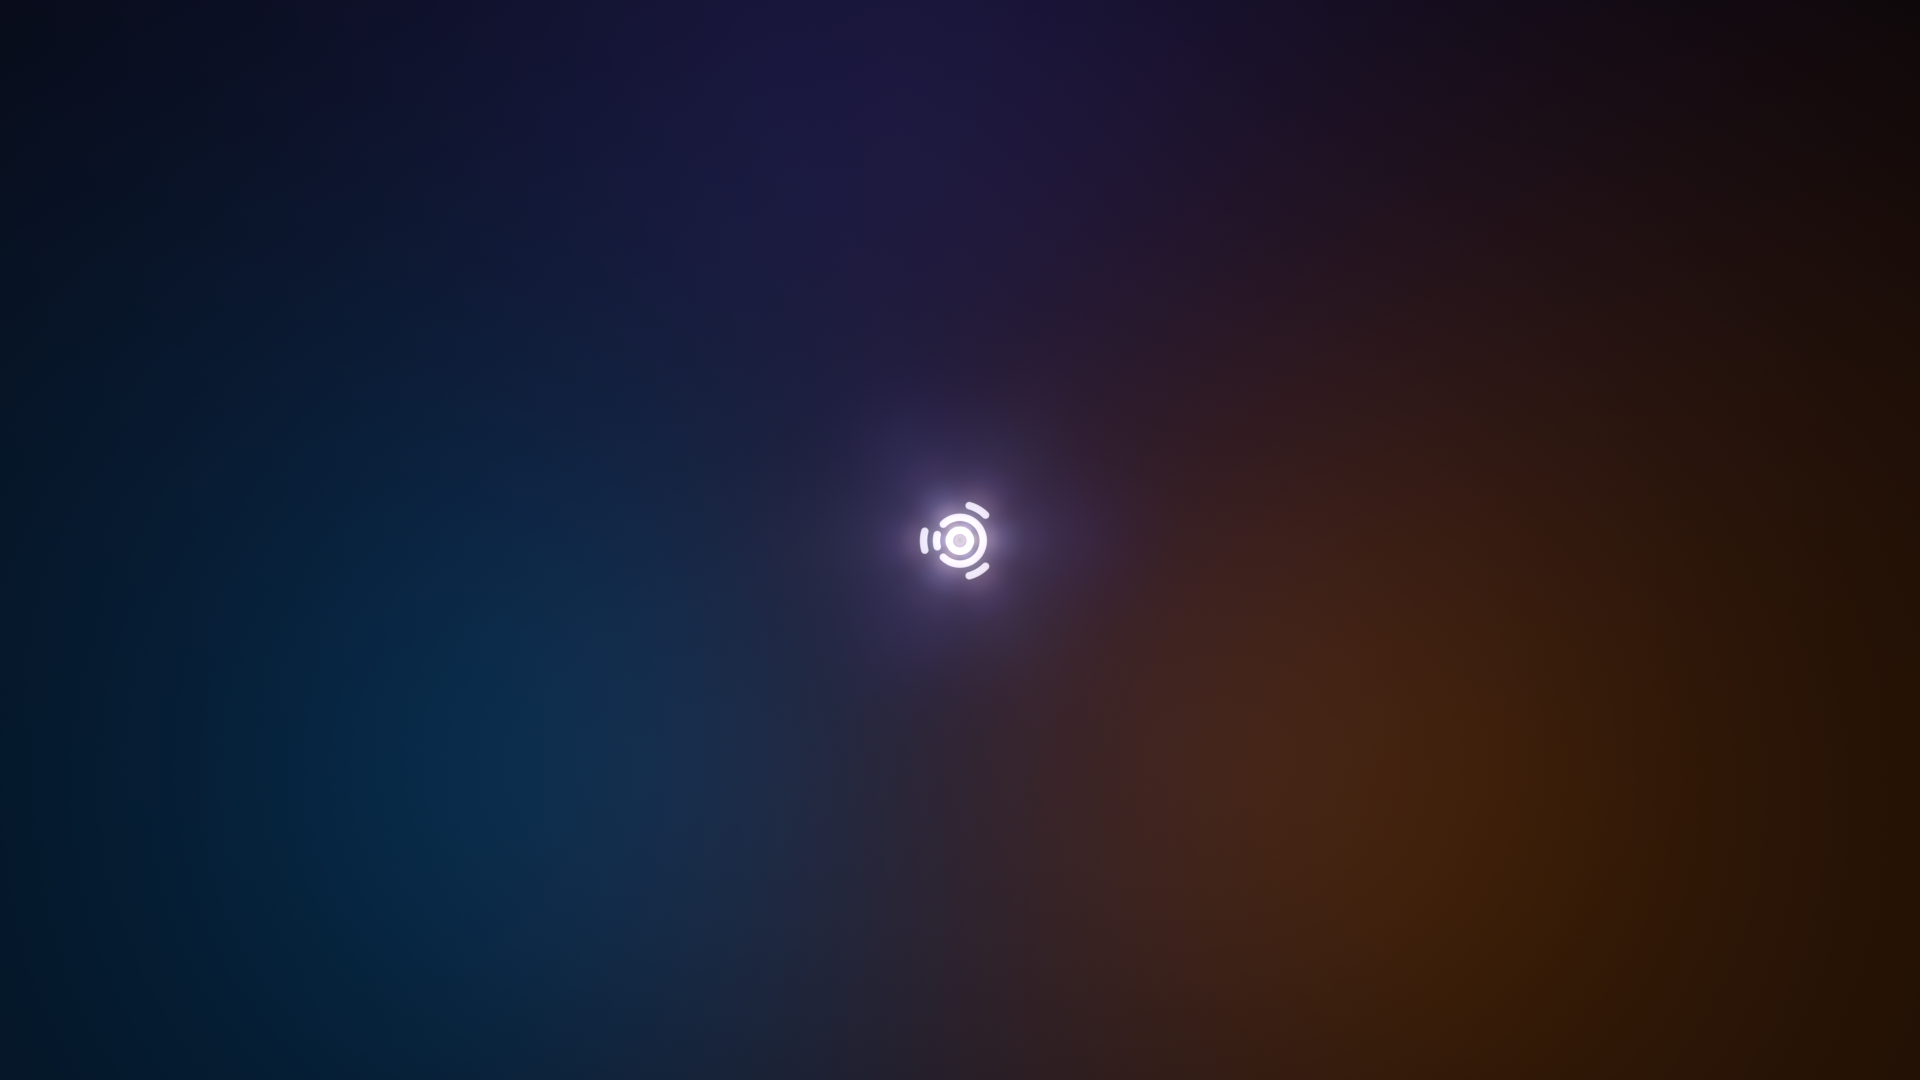 ubuntu wallpaper,himmel,blau,licht,atmosphäre,astronomisches objekt